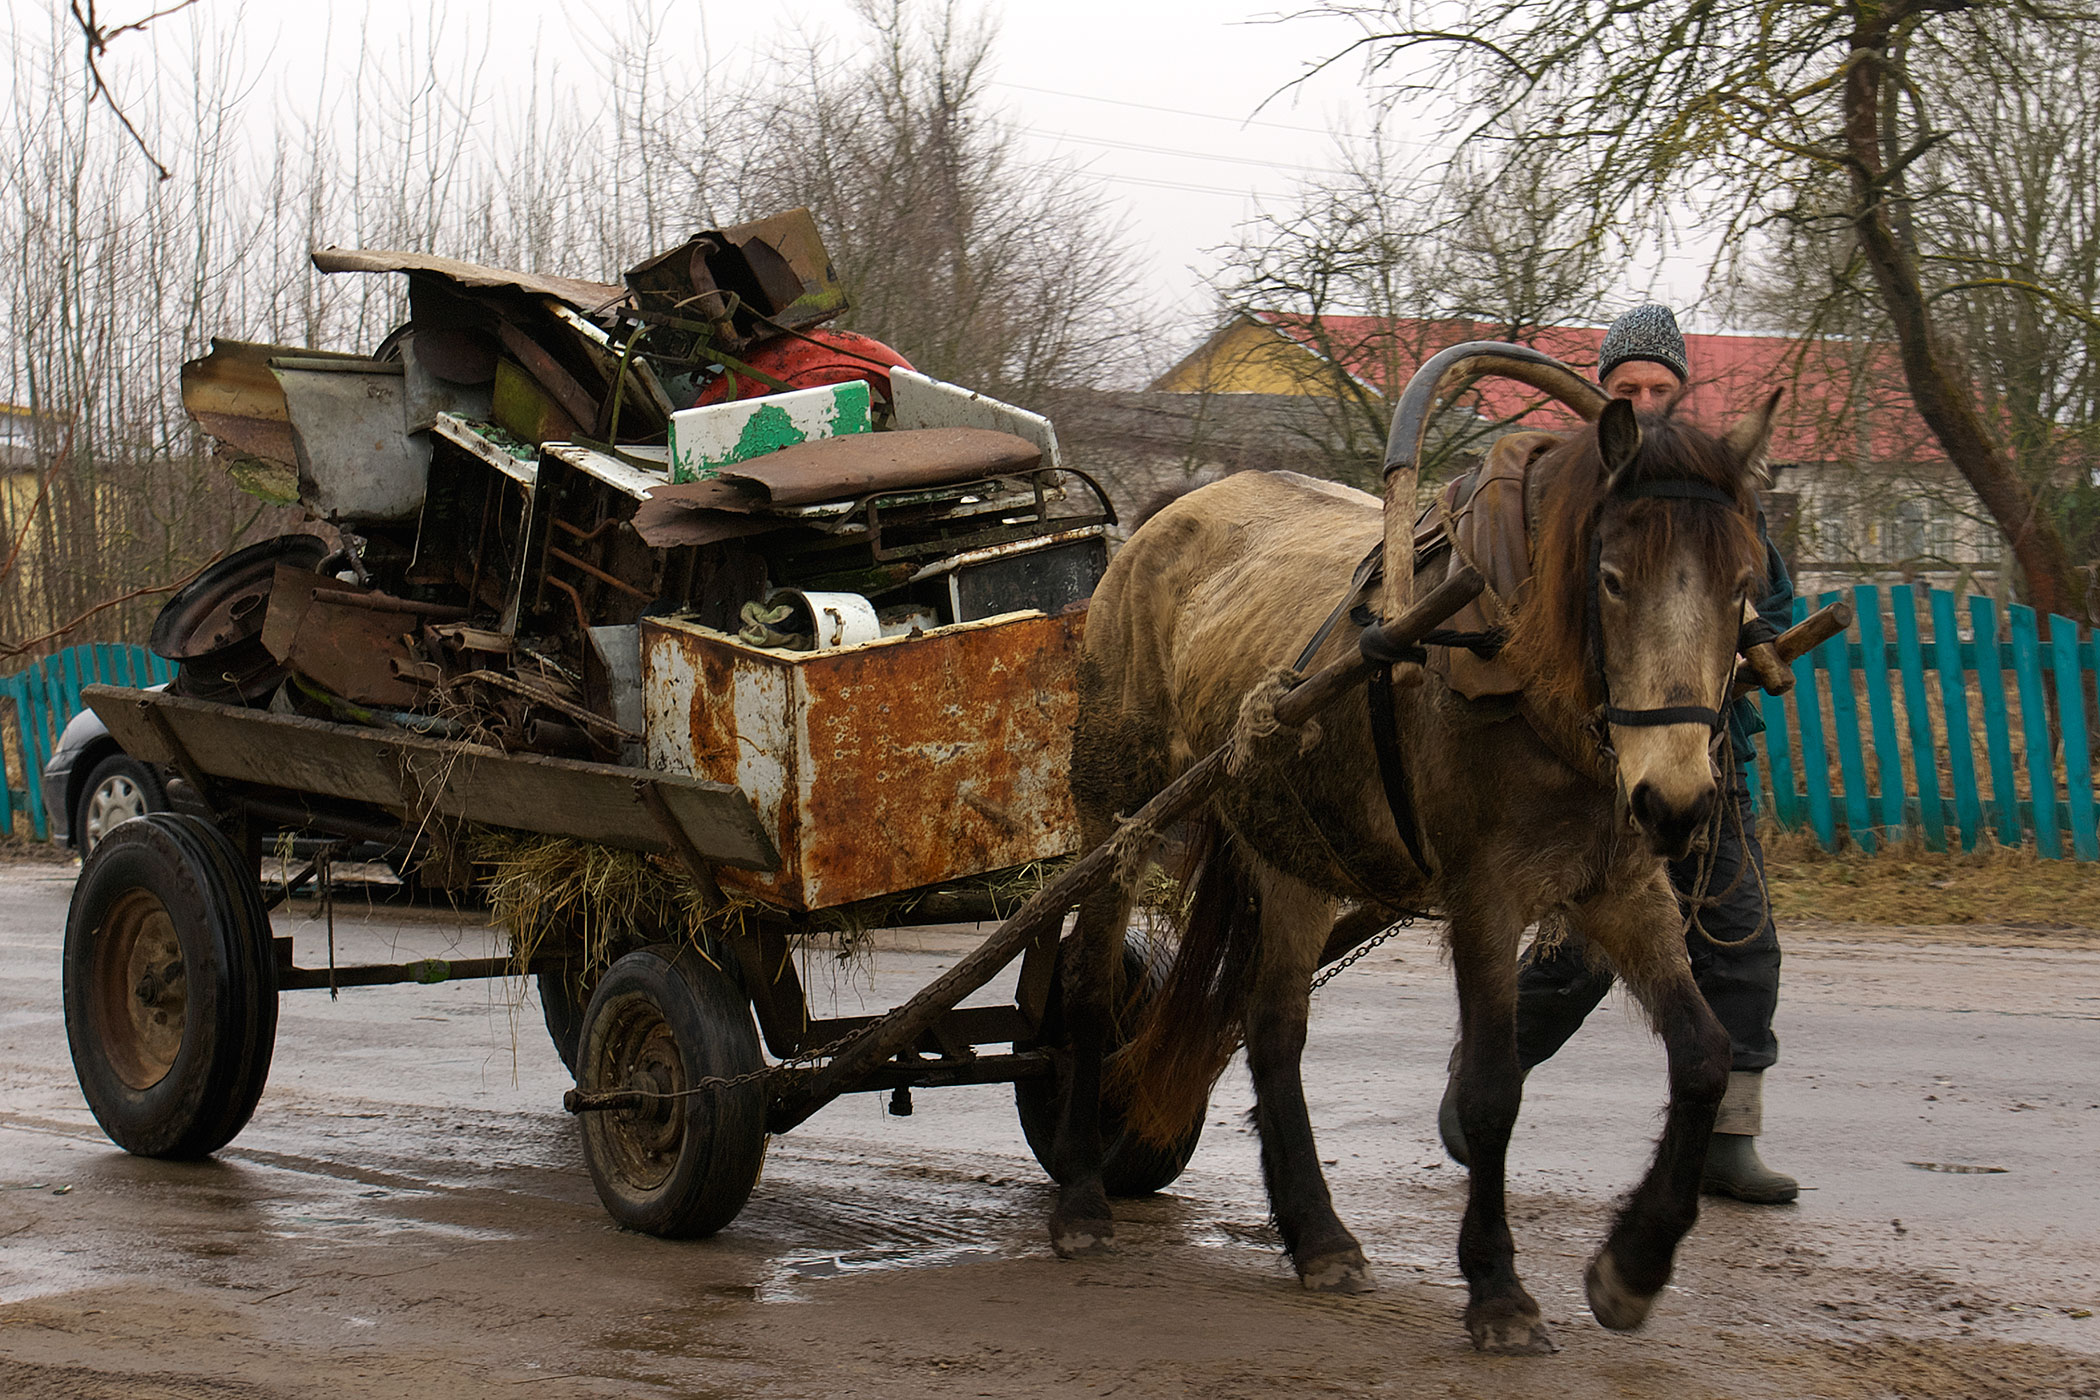 Мужчина везет на телеге запряженной лошадью металлолом. Фото Сергея Серебро